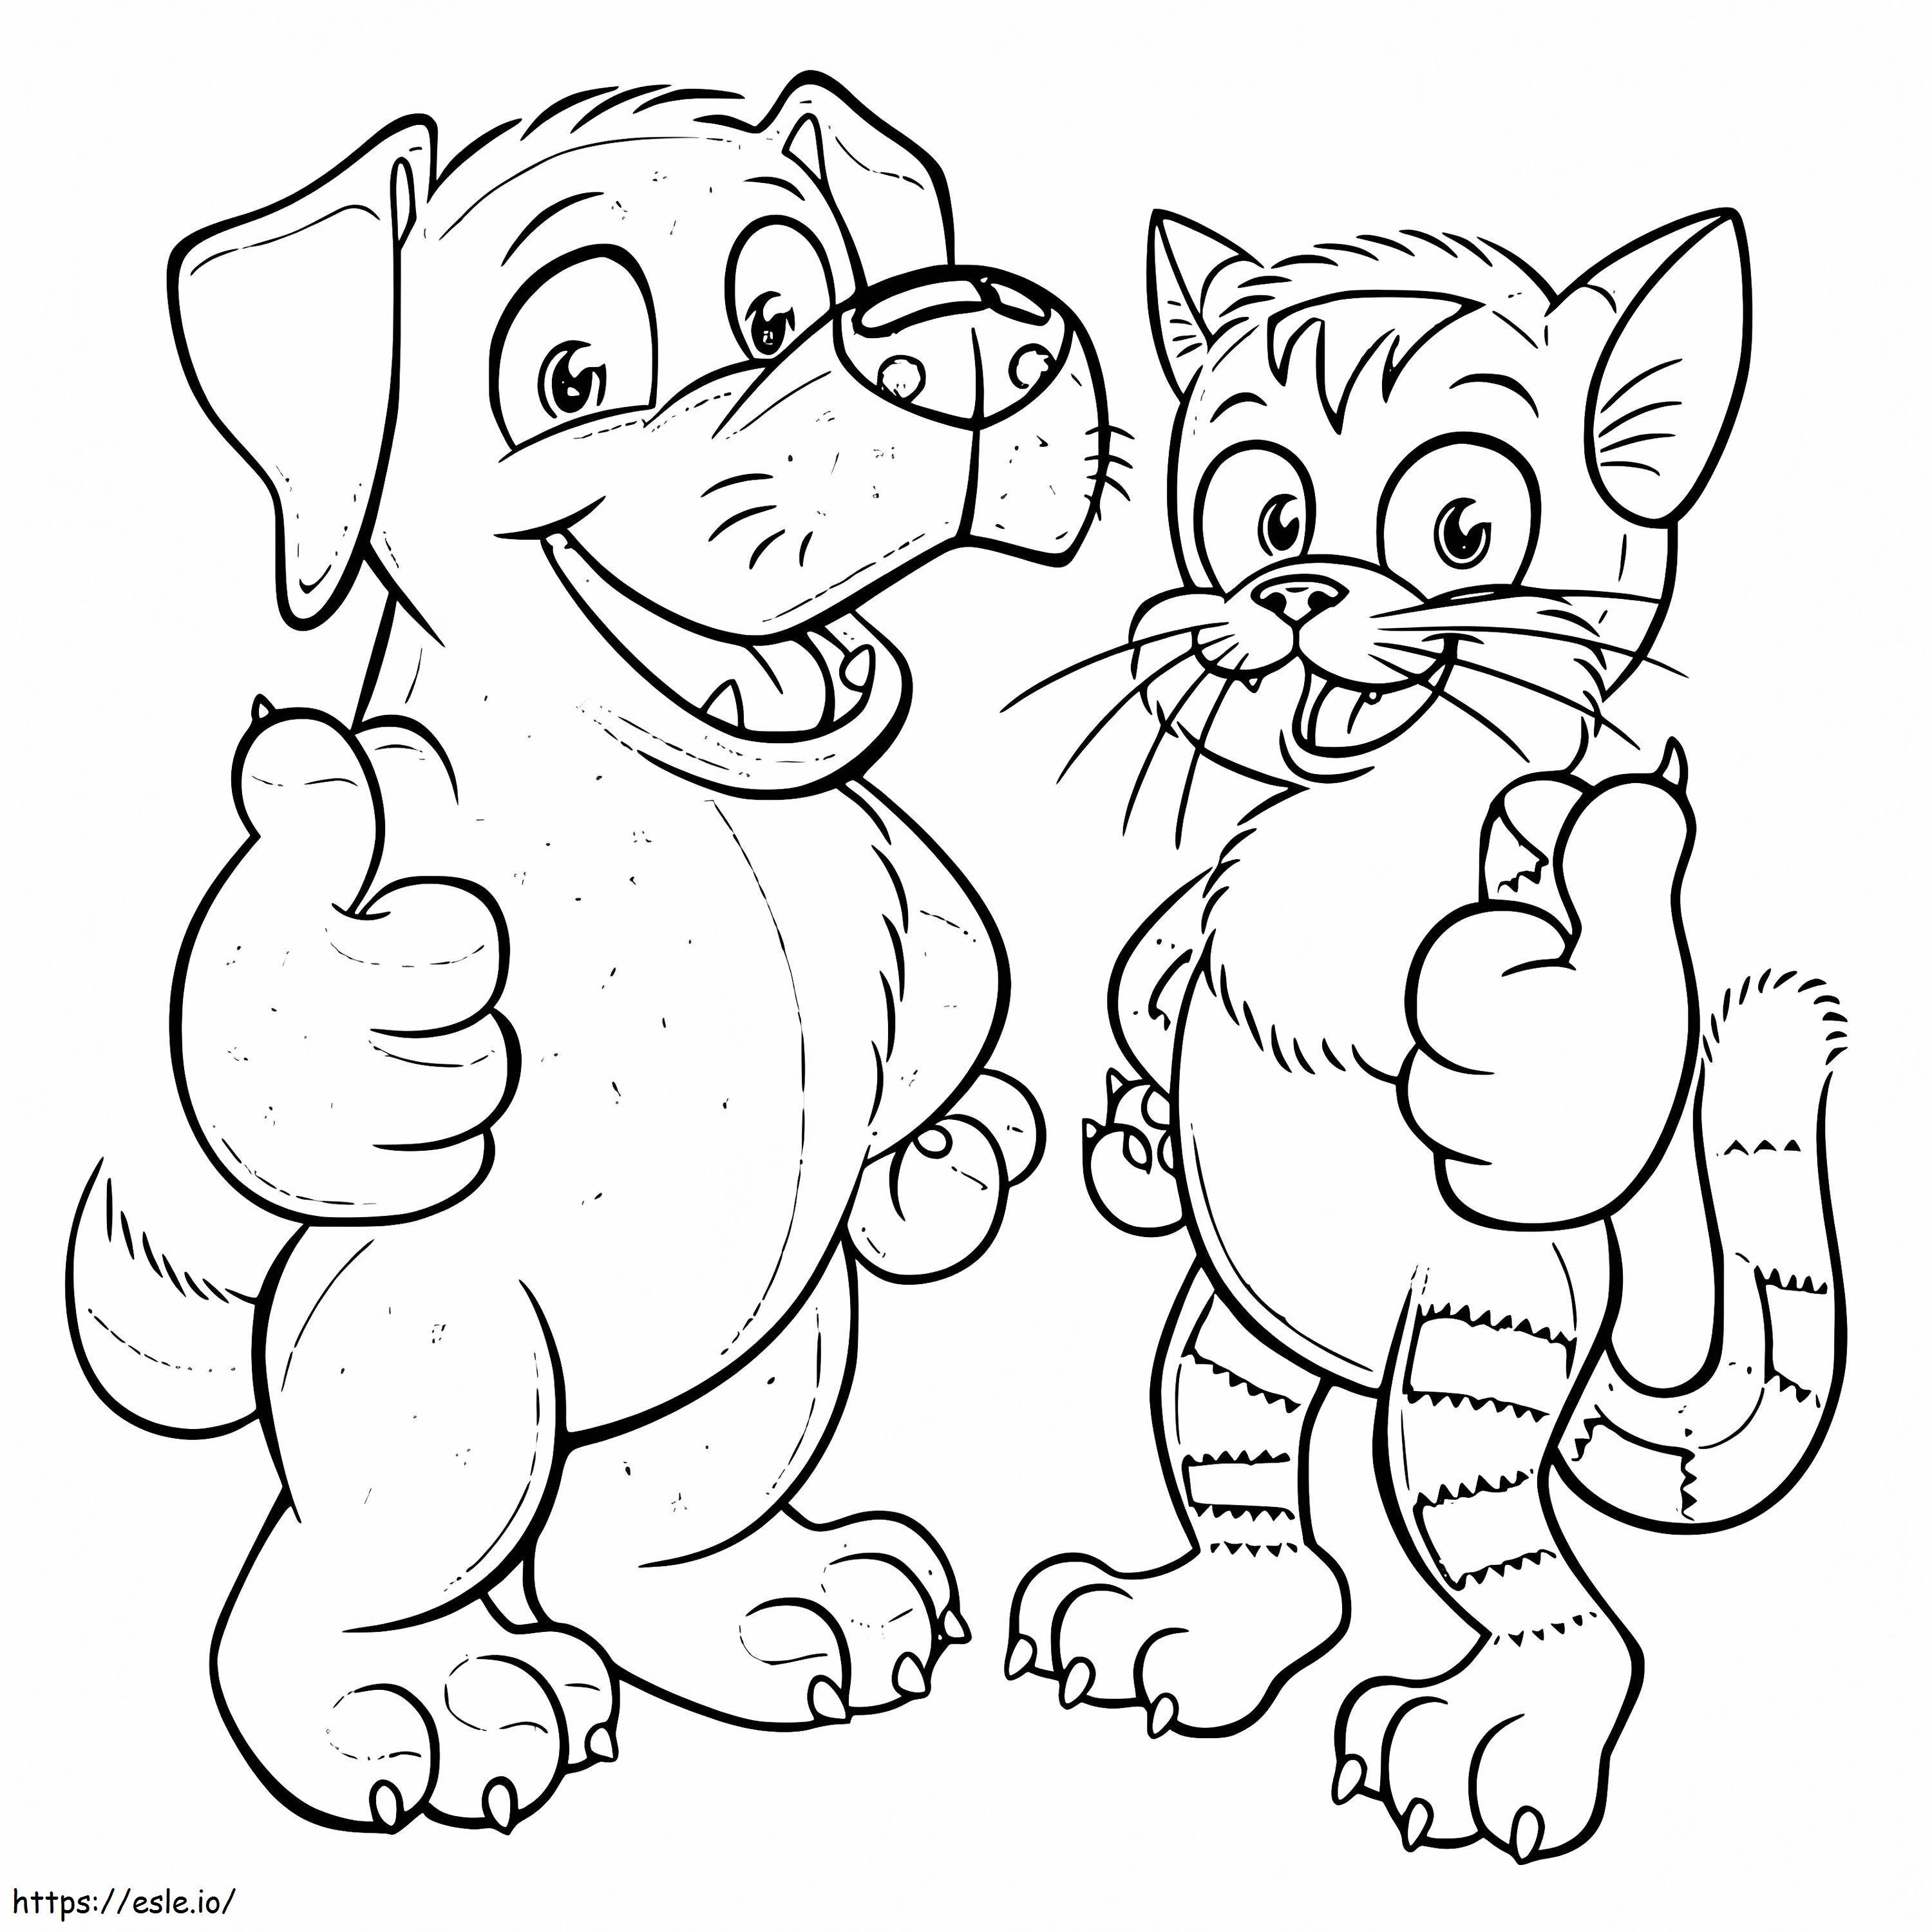 Gatto e cane del fumetto da colorare